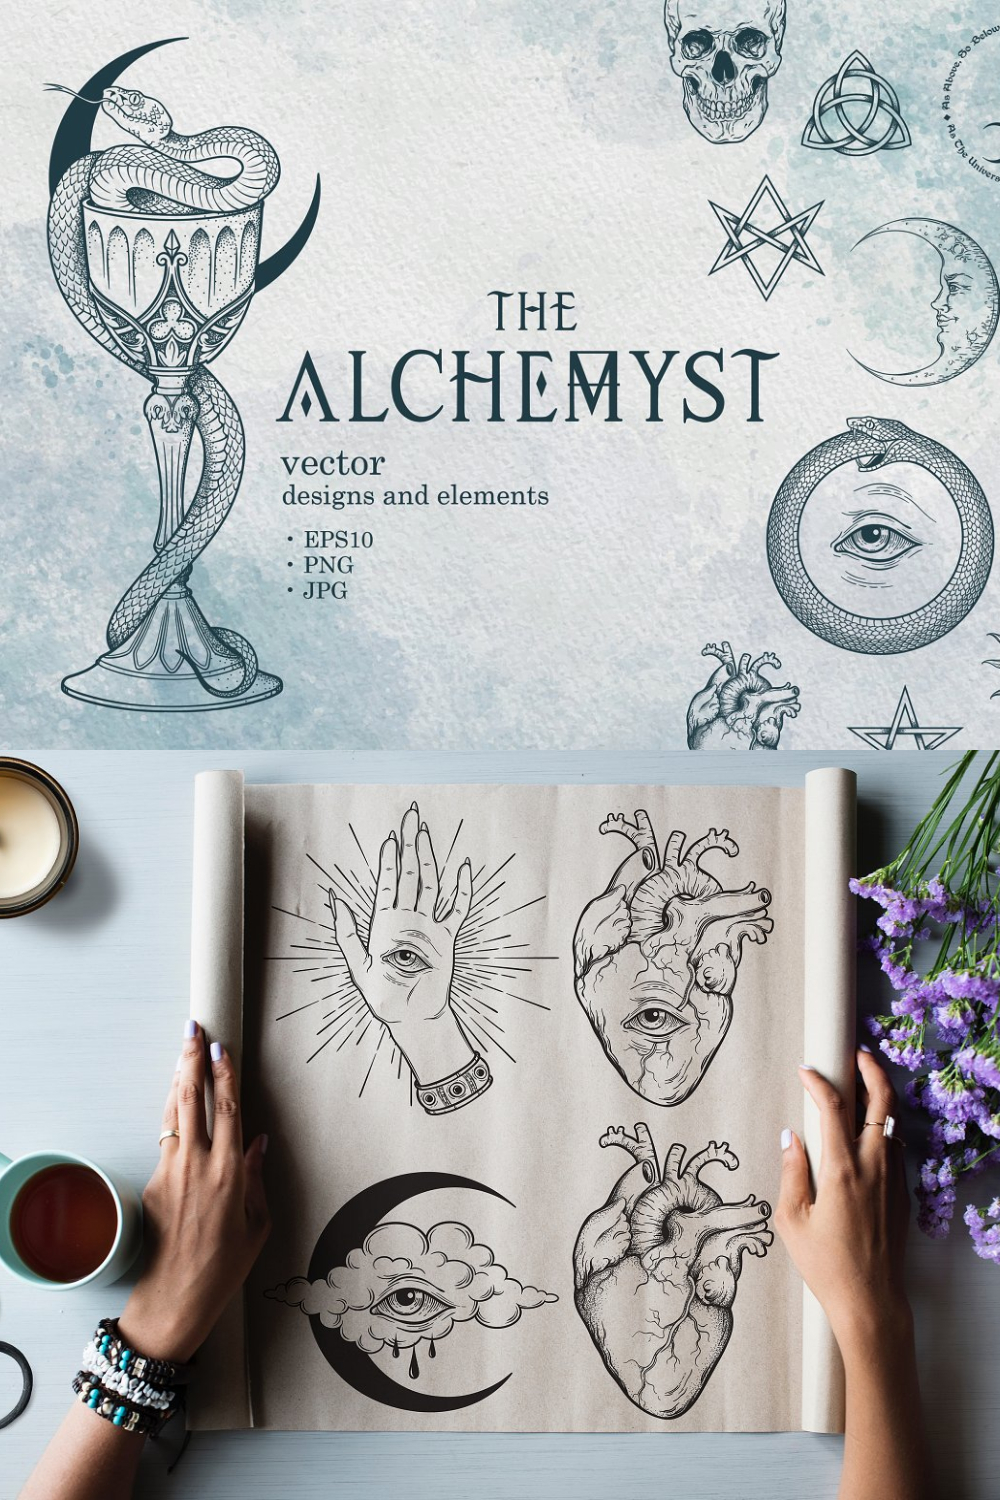 The Alchemyst - Pinterest.